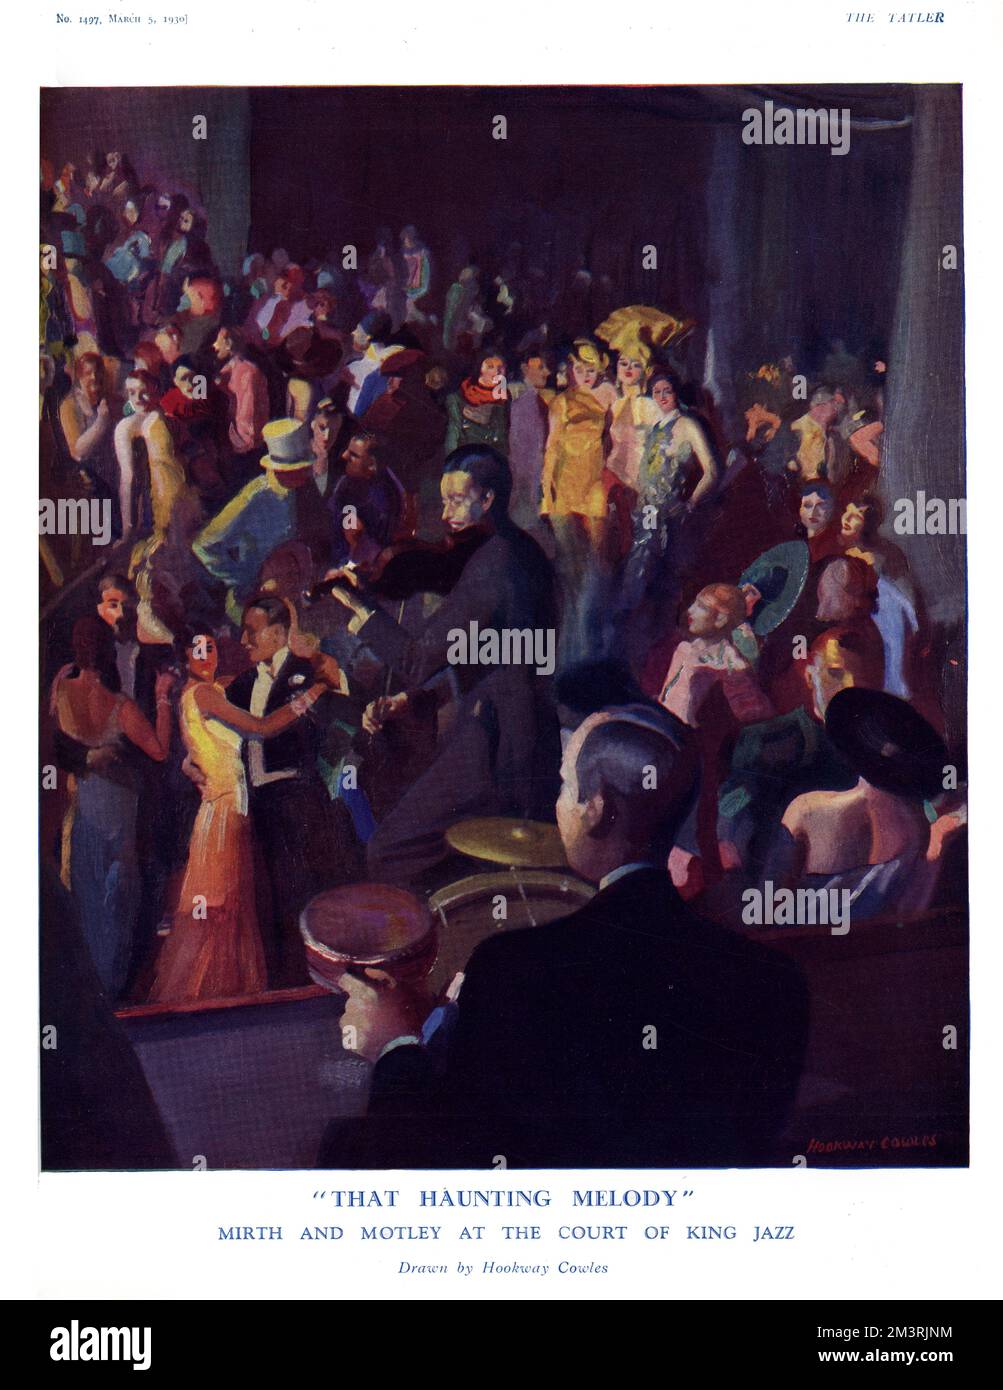 Heiterkeit und Spruch am Hof des King Jazz. Auf der Tanzfläche eines Nachtclubs oder Restaurants spielt ein Jazzorchester für die Gäste. 1930 Stockfoto